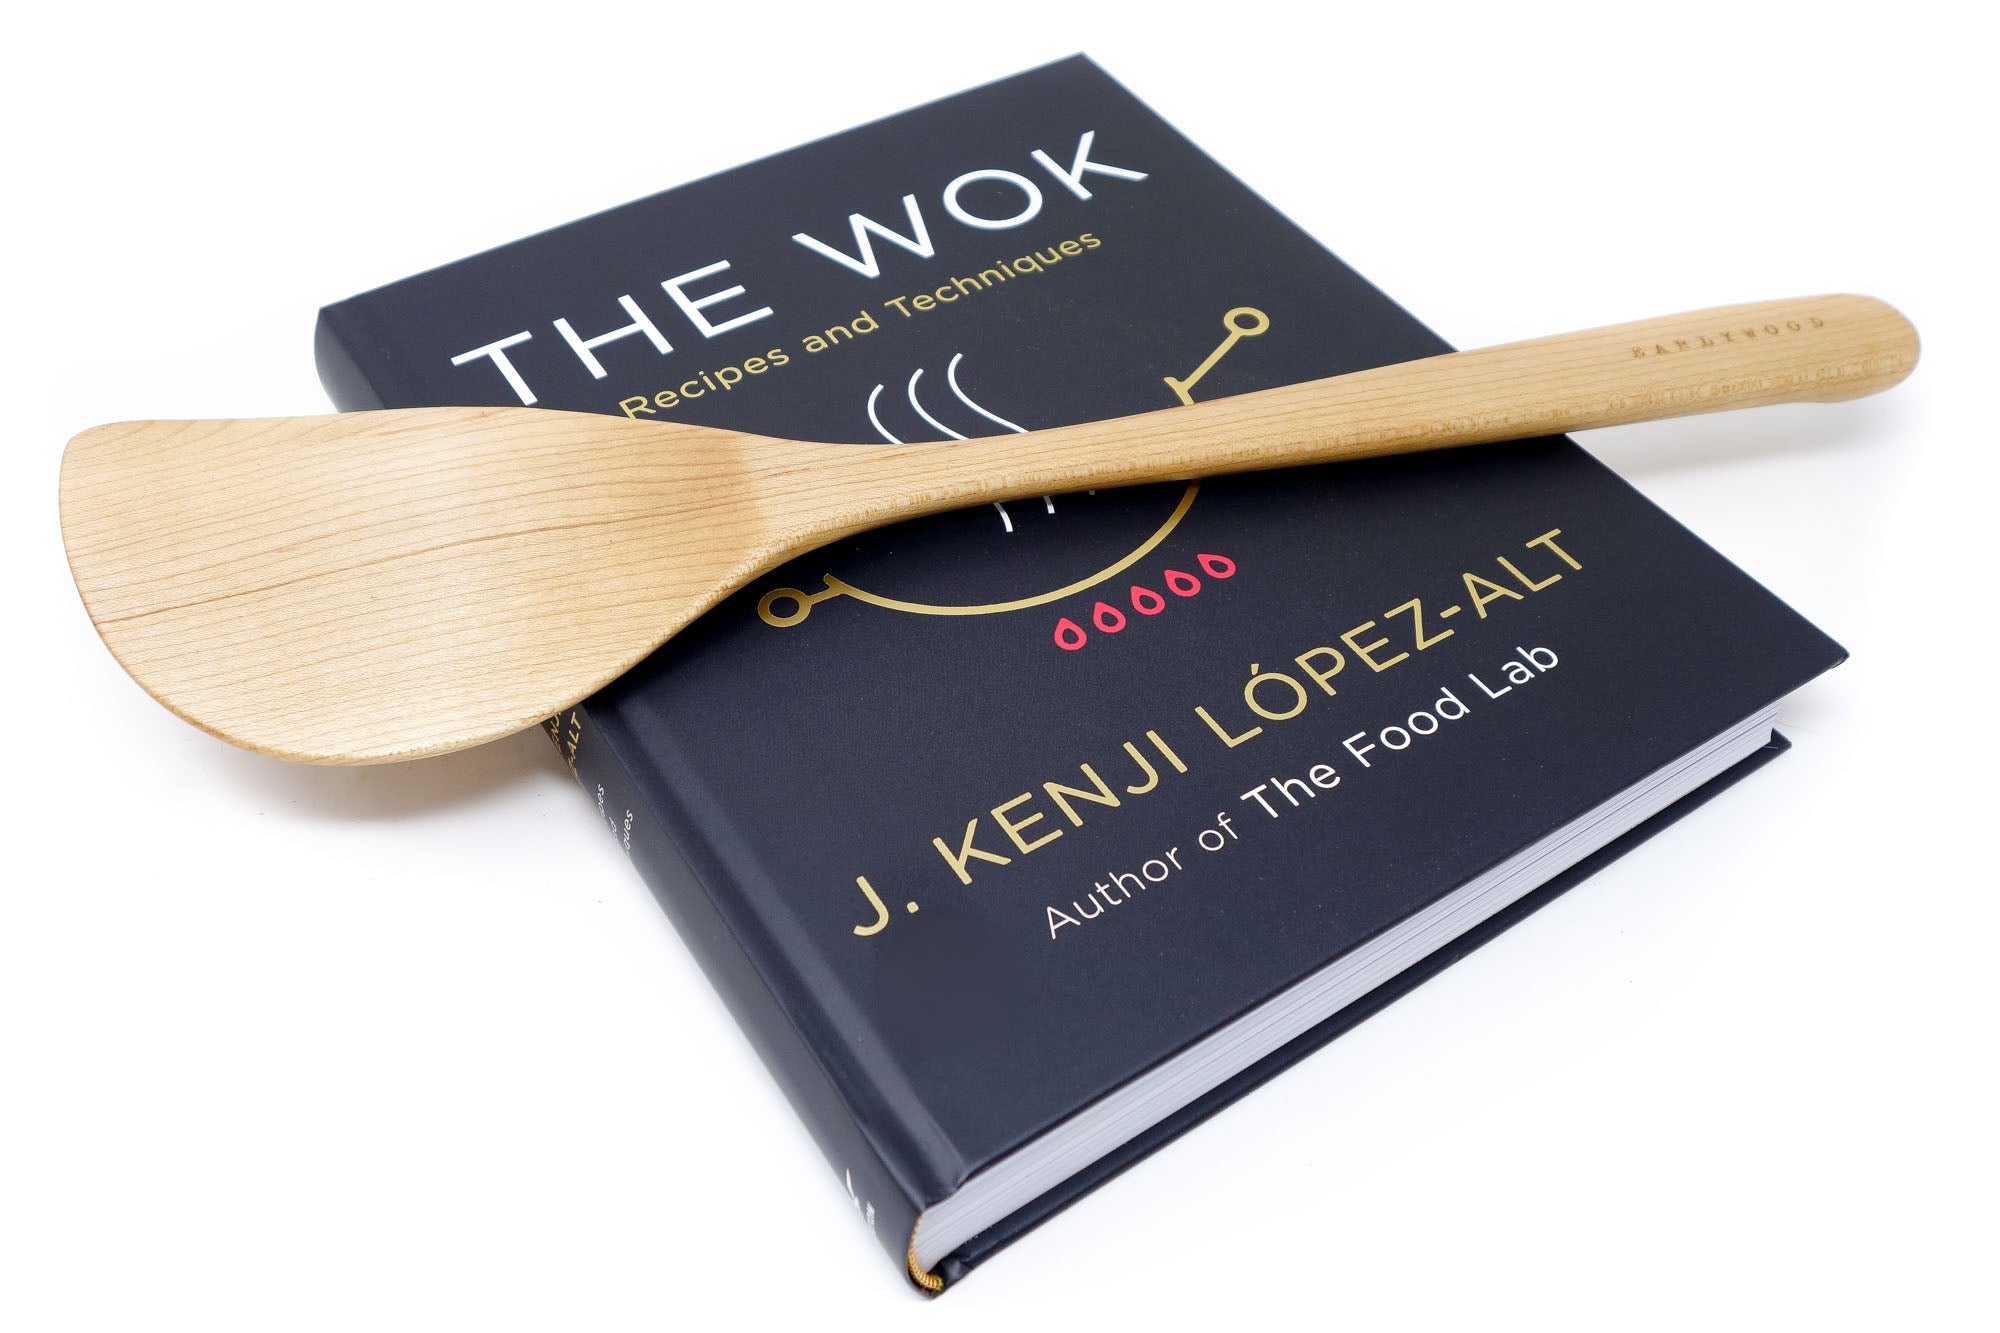 wood wok spatula